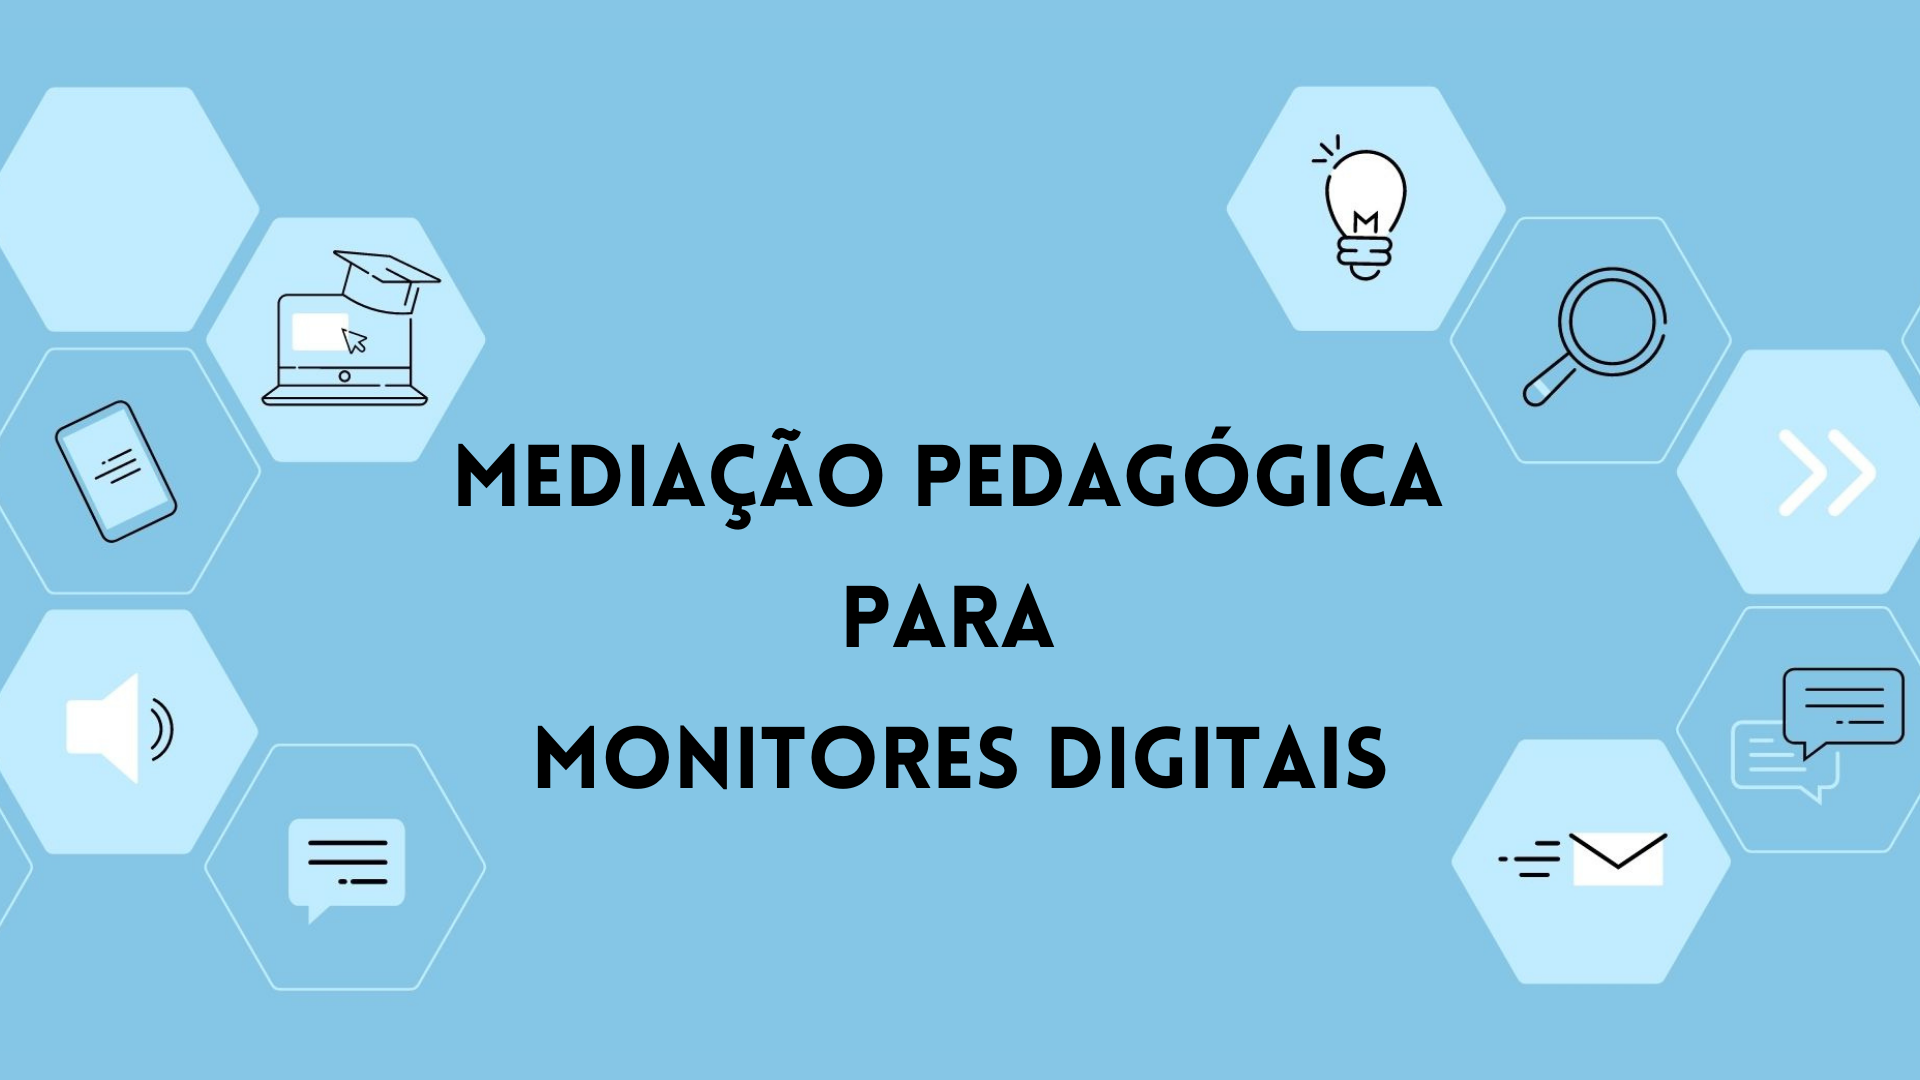 Mediação Pedagógica para Monitores Digitais - 2021